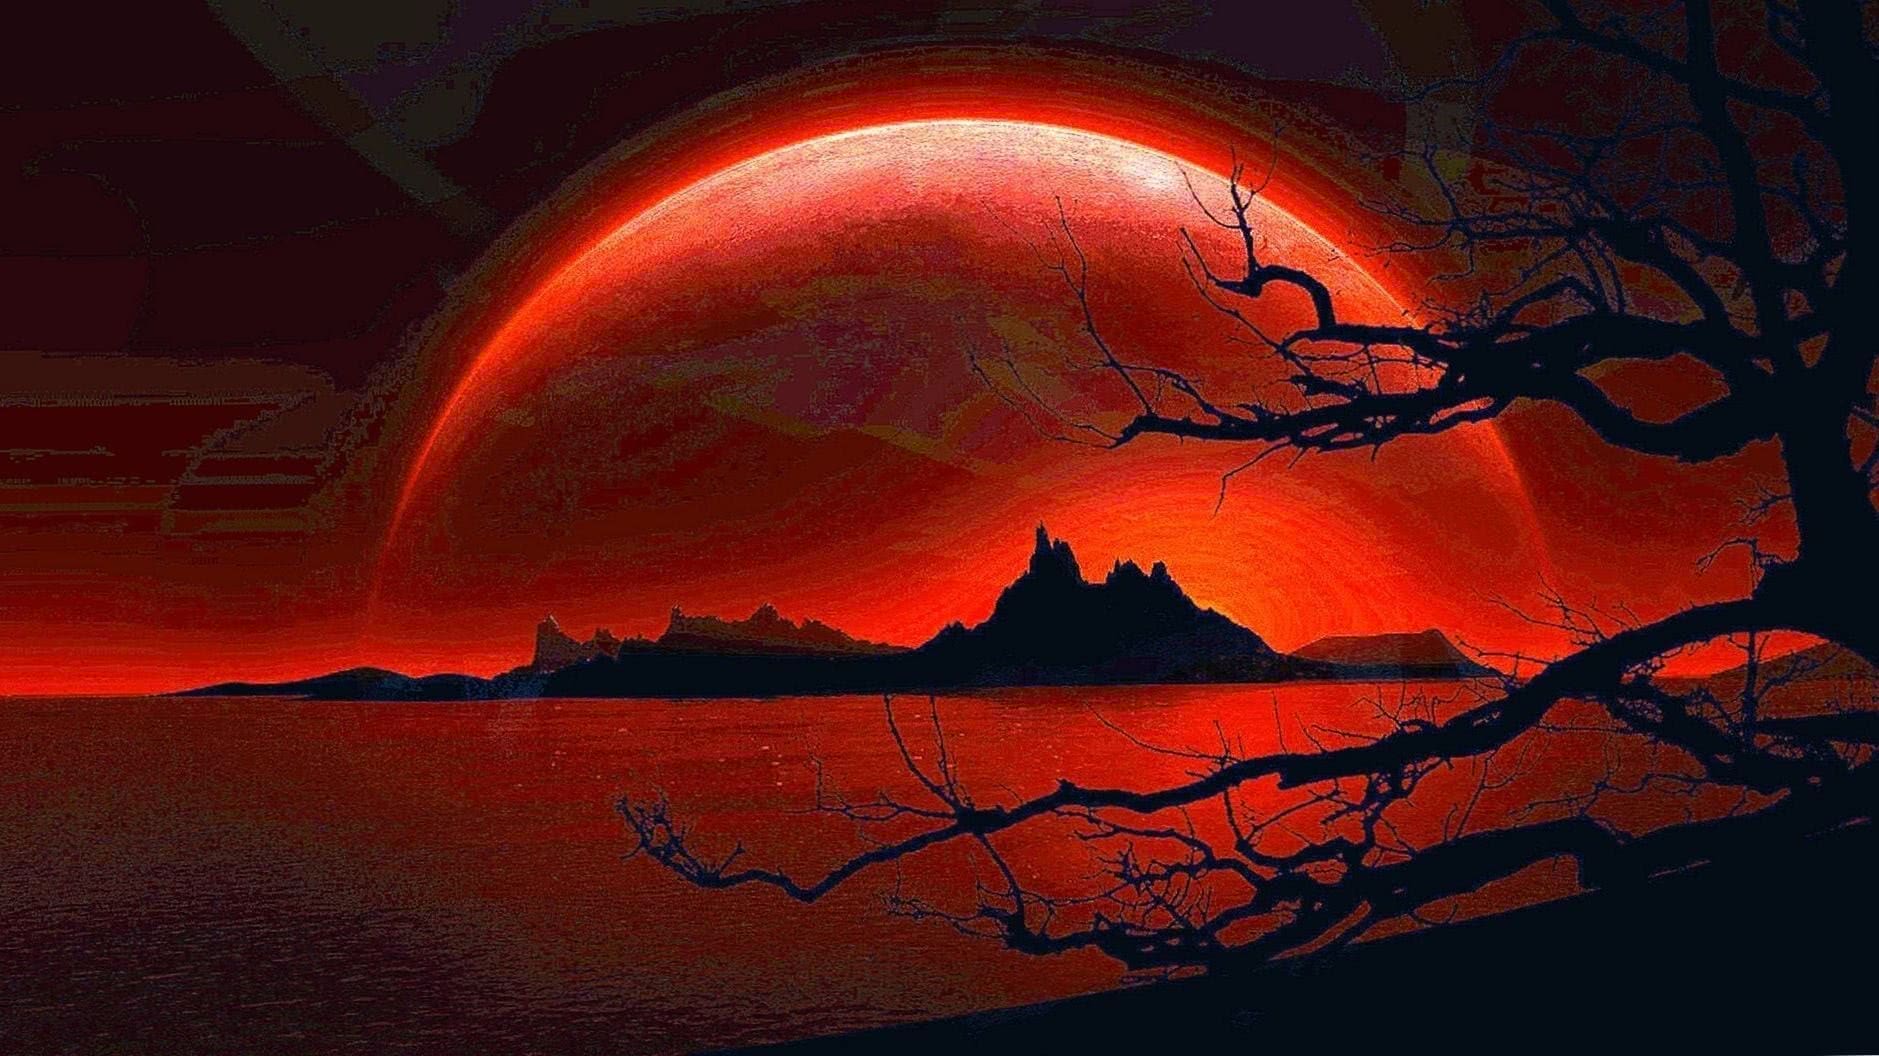 Hình nền Anime về một mặt trăng đỏ sẽ khiến bạn cảm thấy nửa đêm huyền bí và đầy lãng mạn. Hãy để tình cảm của những nhân vật trong bức hình truyền tải đến bạn trong không gian yên tĩnh của đêm tối.